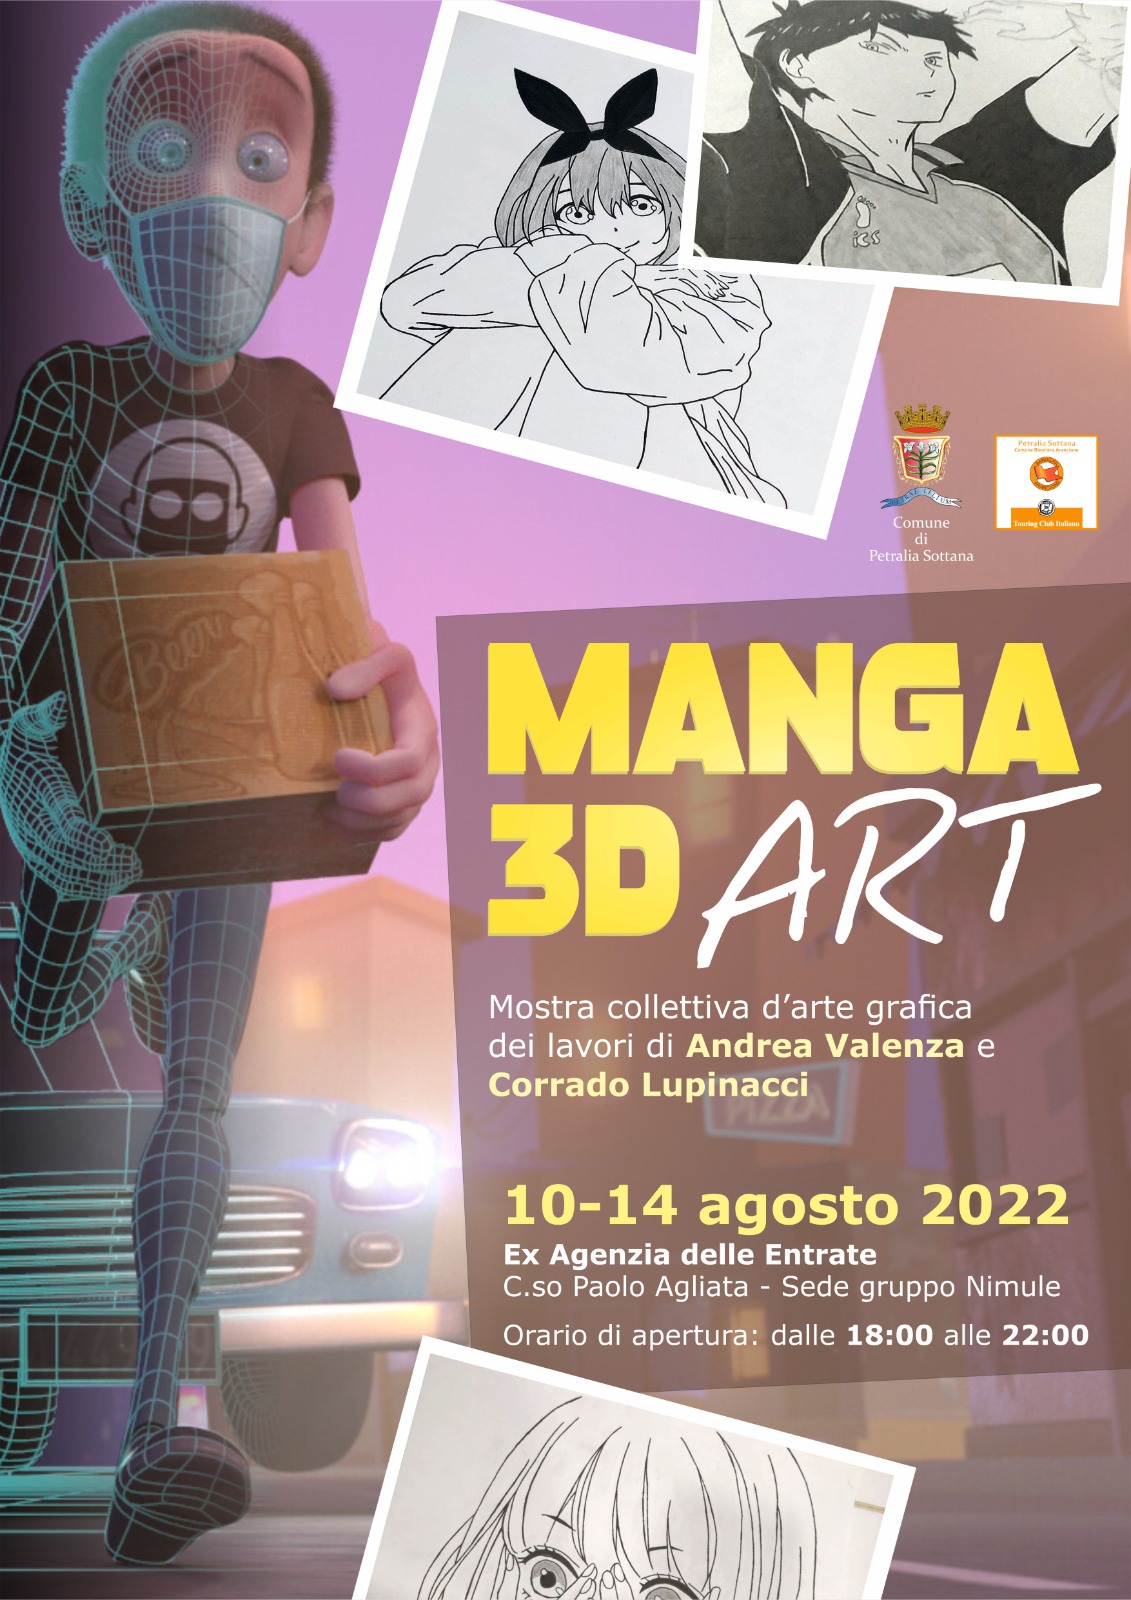 Manga 3D Art